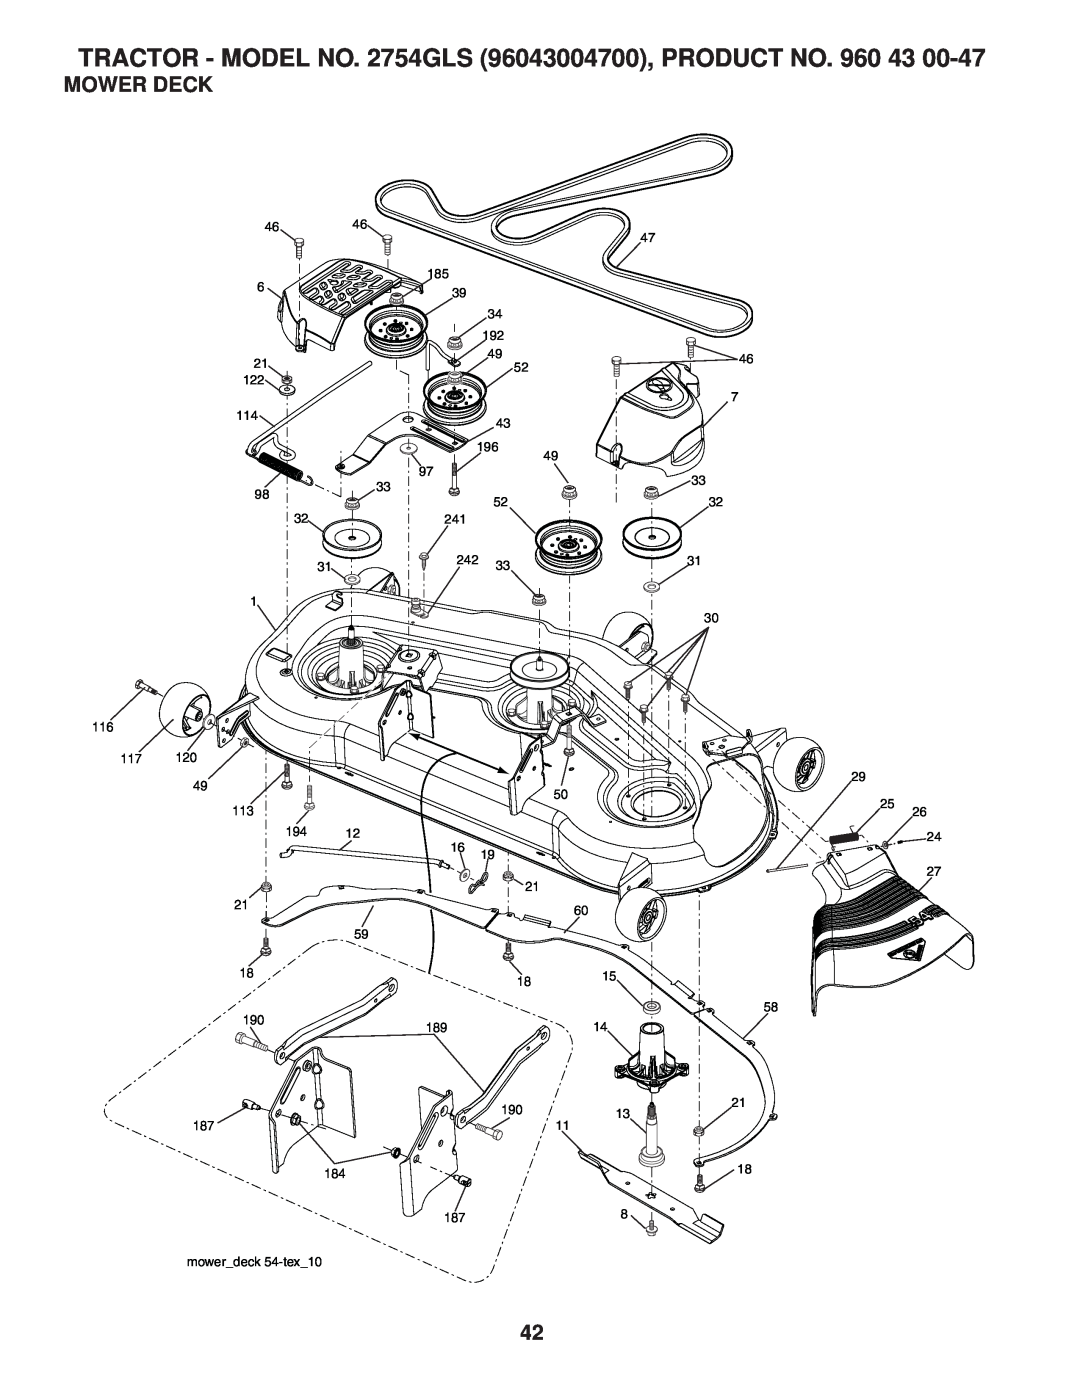 Husqvarna 2754 GLS manual Mower Deck, TRACTOR - MODEL NO. 2754GLS 96043004700, PRODUCT NO, 116 117, 113, 19013 